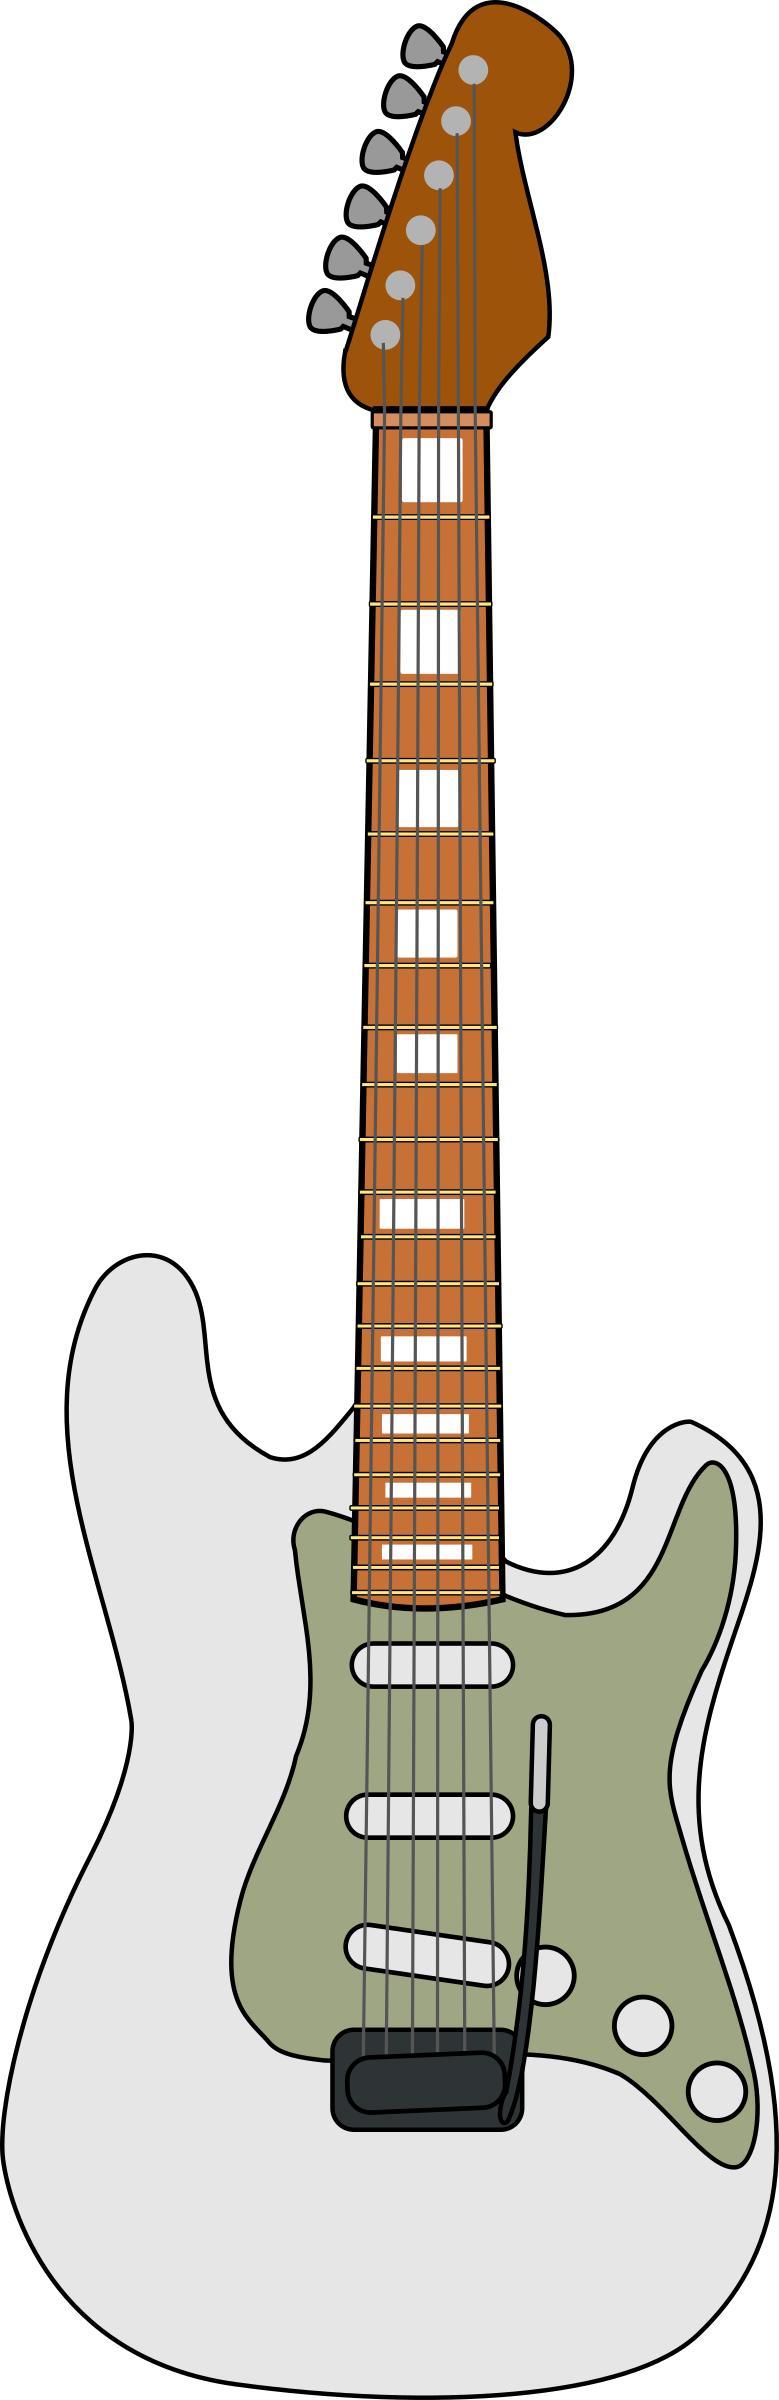 Fender Stratocaster png transparent